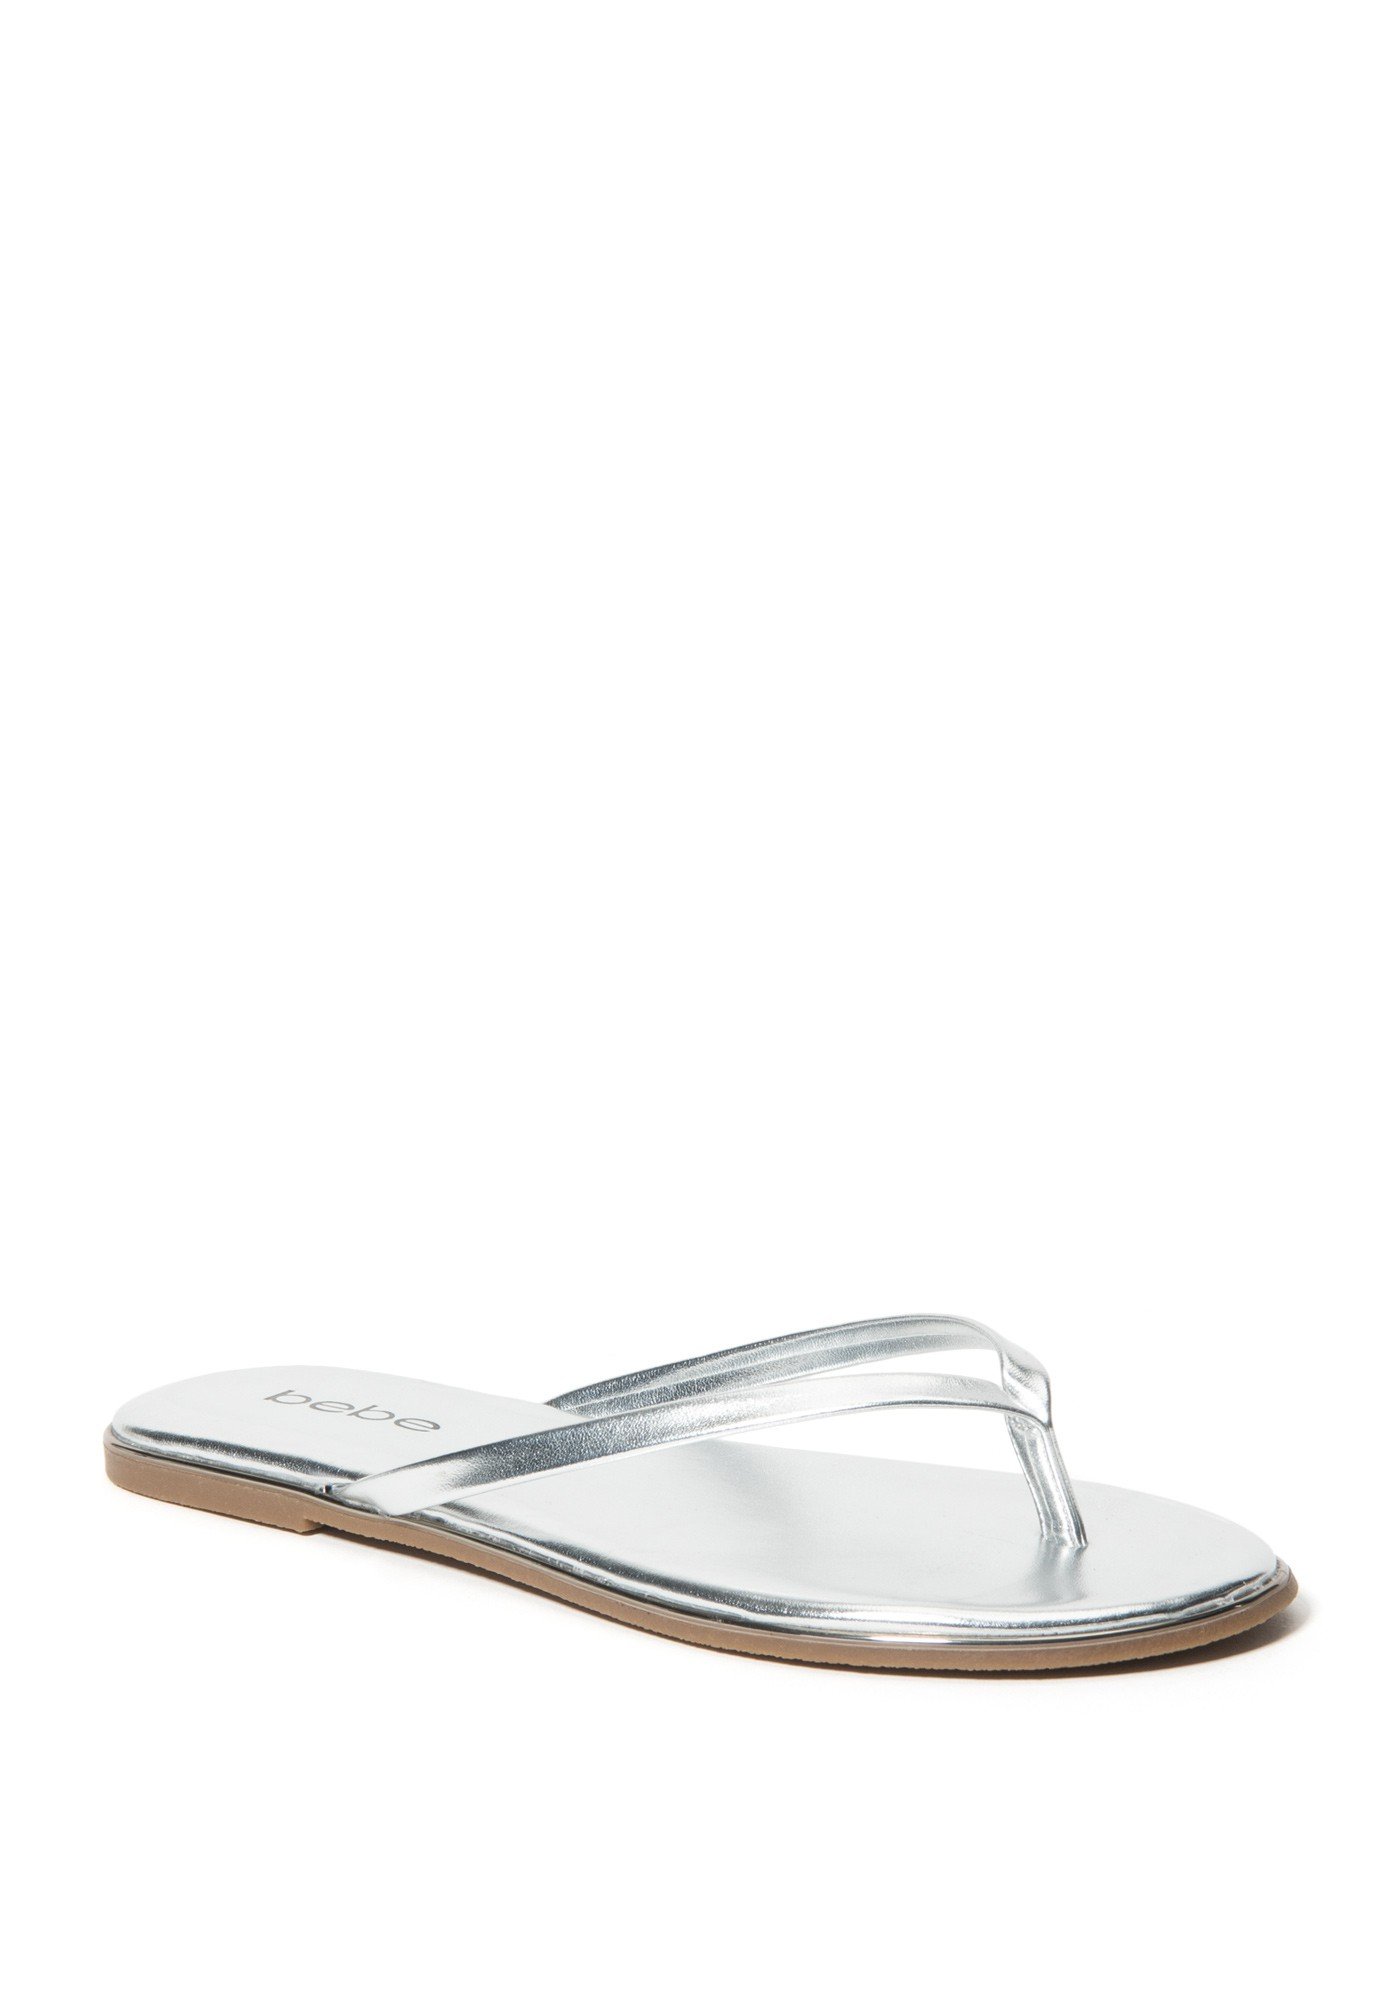 Bebe Women's Ilistra Flip Flops, Size 6.5 in Silver Synthetic